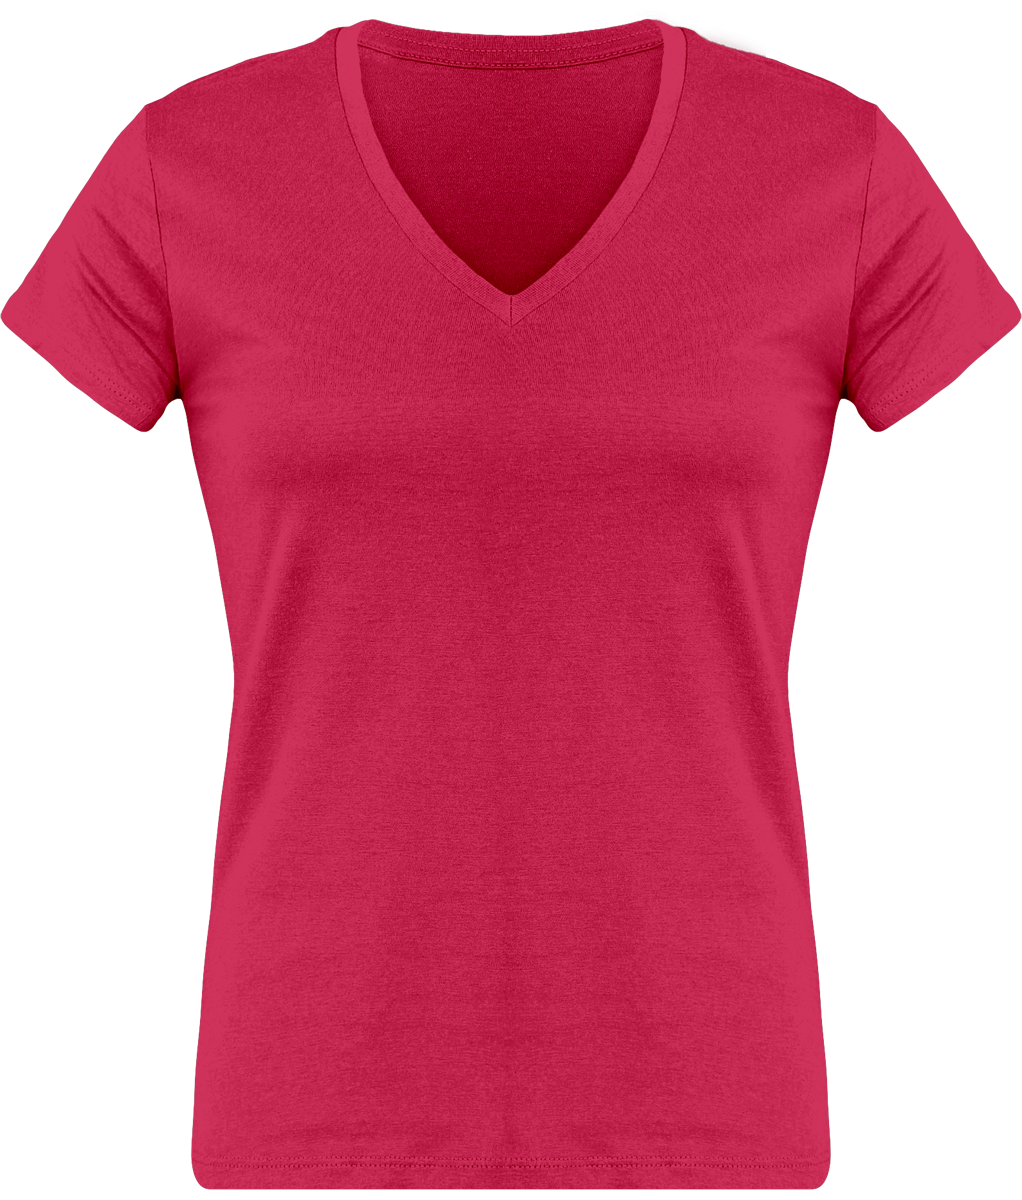 T-Shirt Femme Personnalisé, Féminin Et Confortable Avec Son Col En V Fuchsia